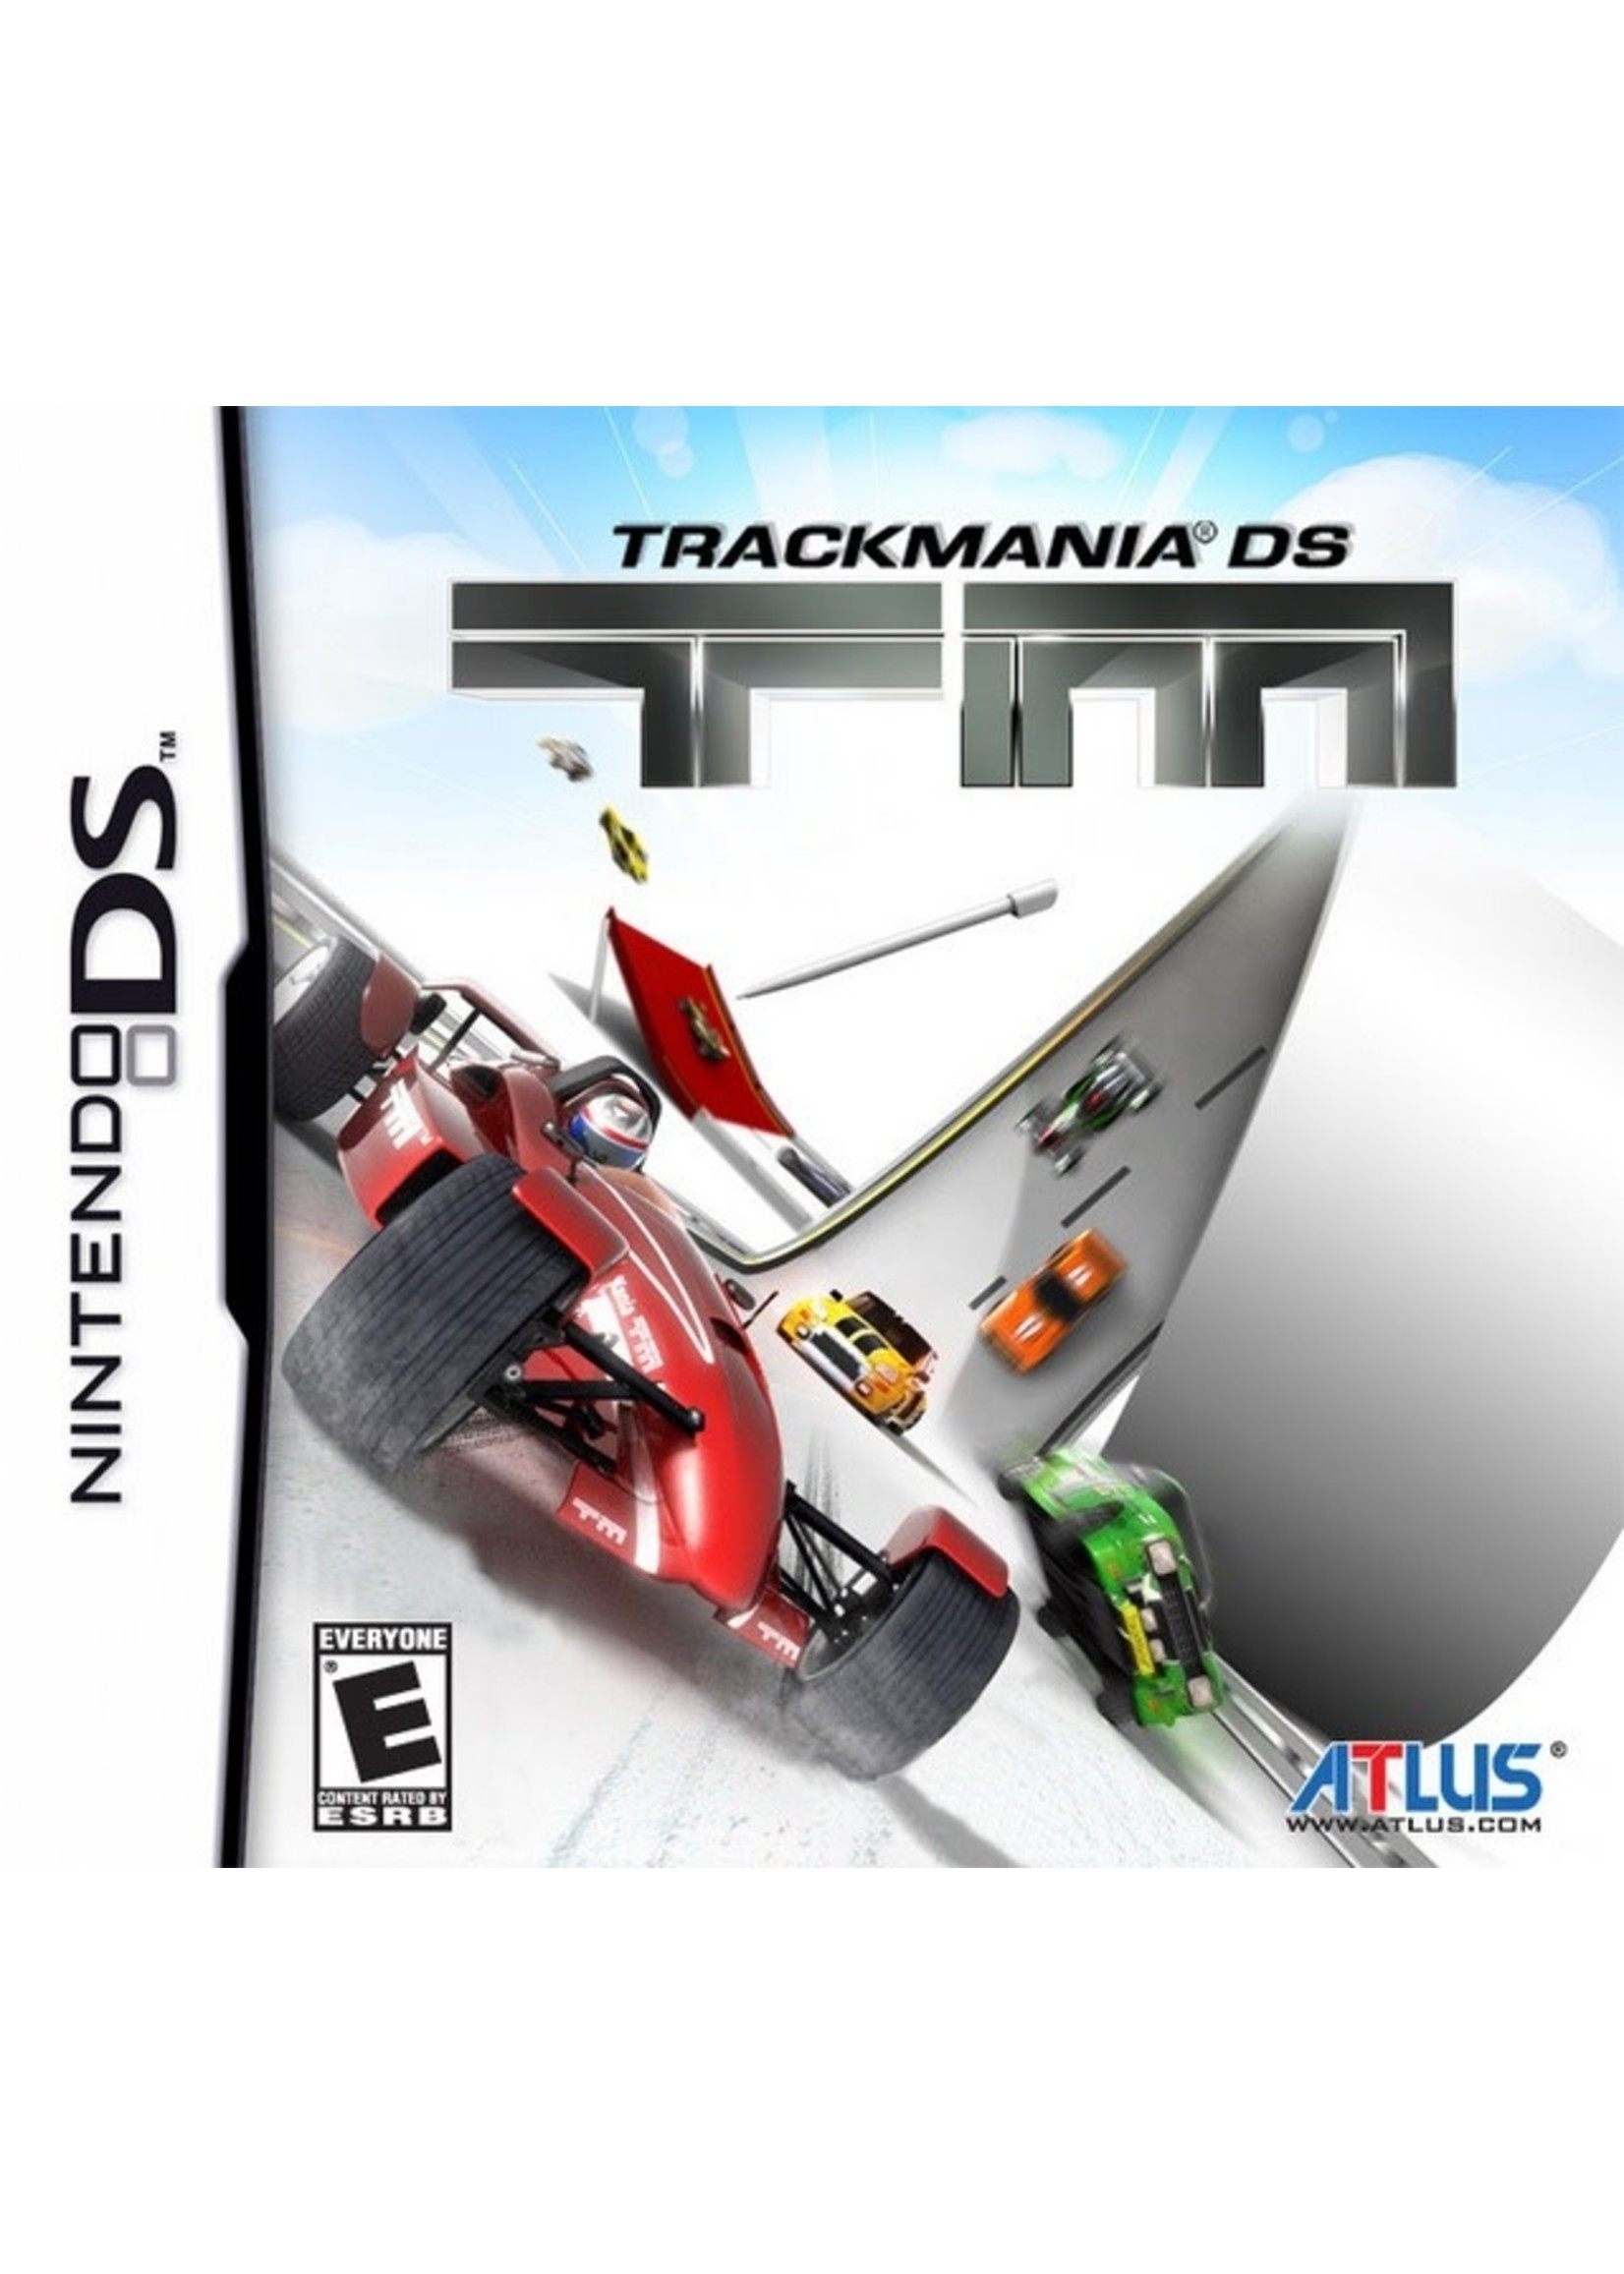 Nintendo DS TrackMania DS - Print